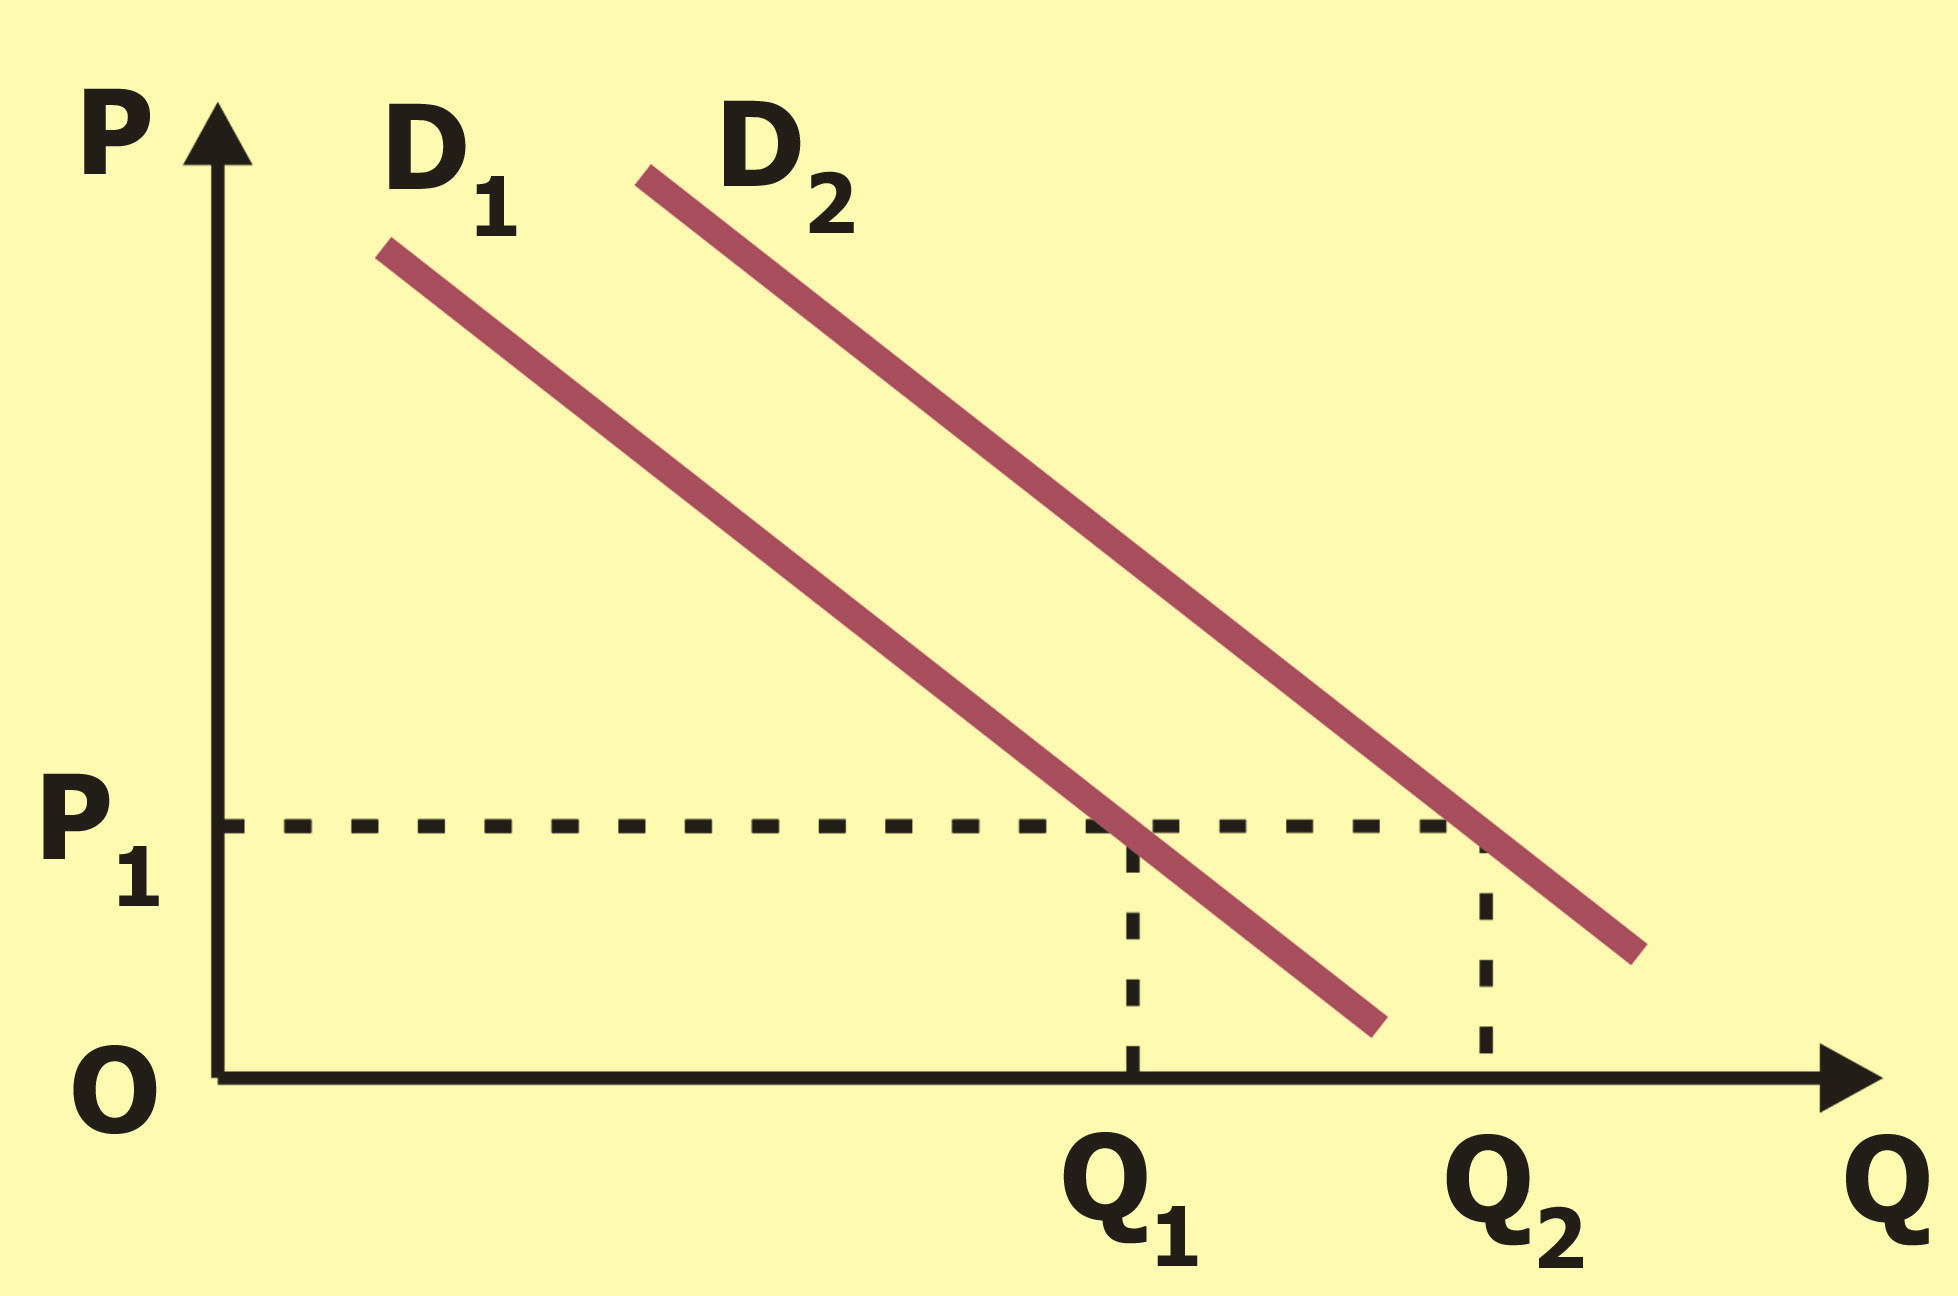 τιμή P 2 η ζητούμενη ποσότητα είναι Q 2.